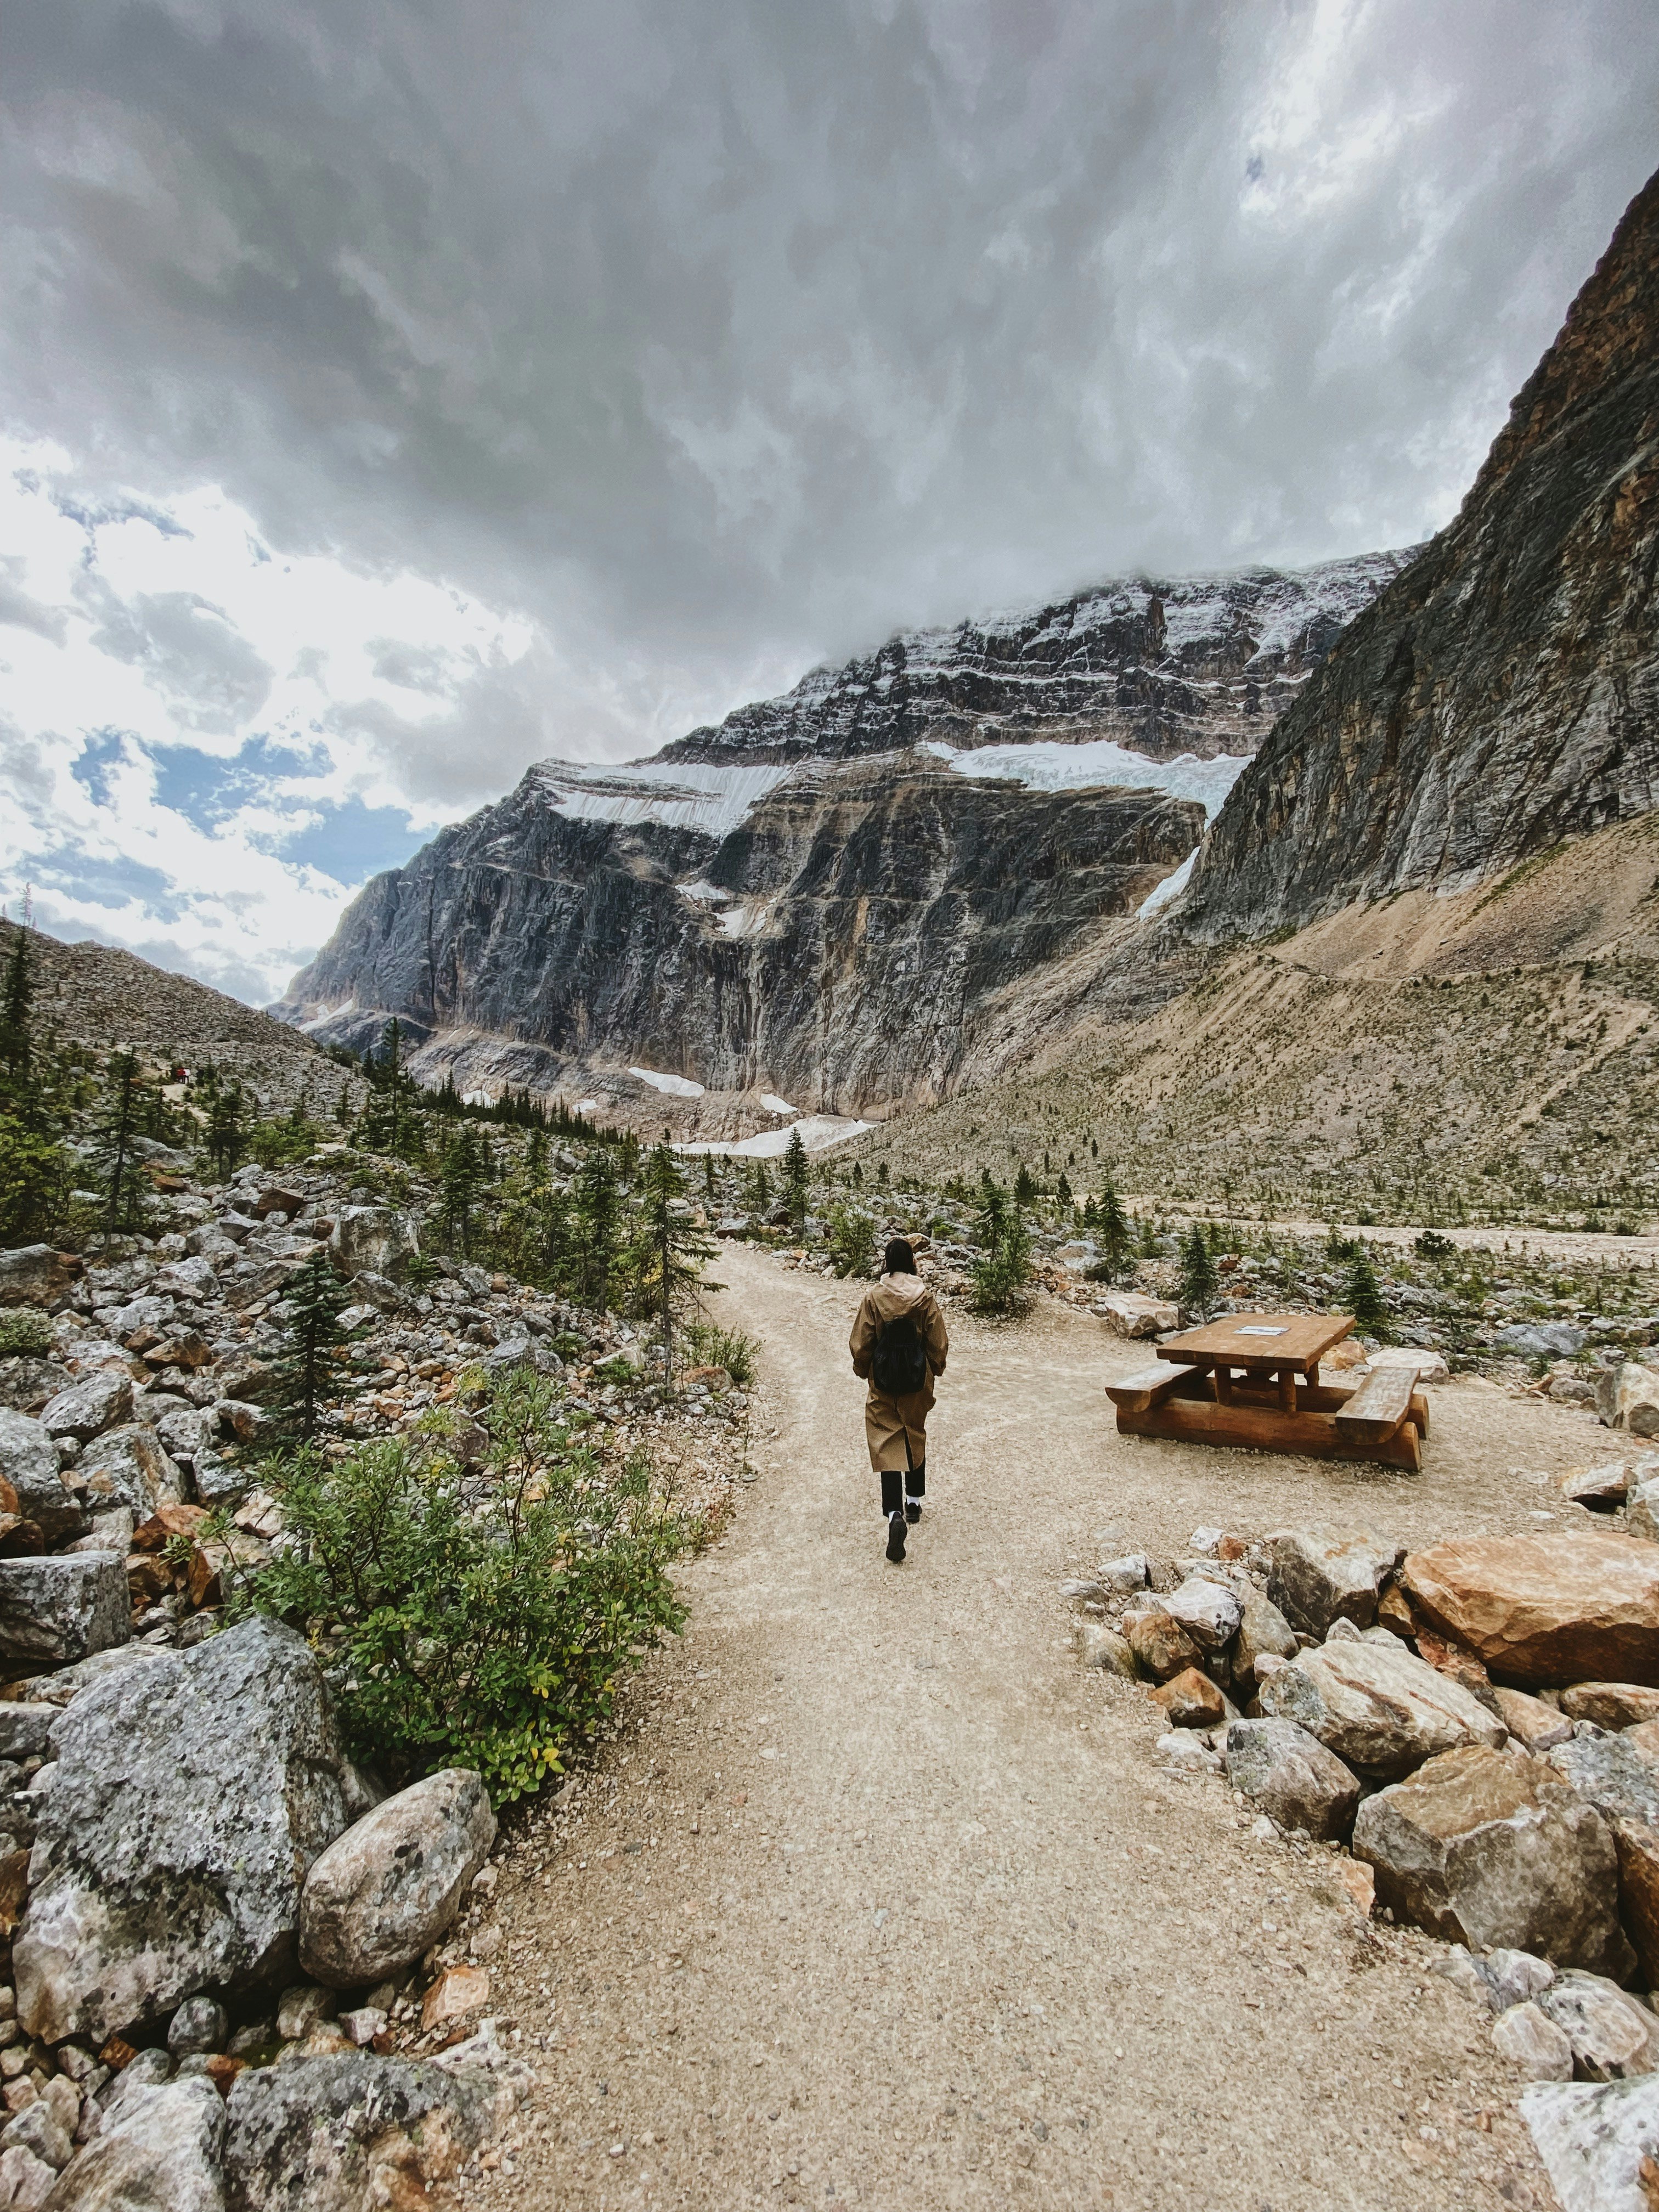 2 people walking on pathway near mountains during daytime